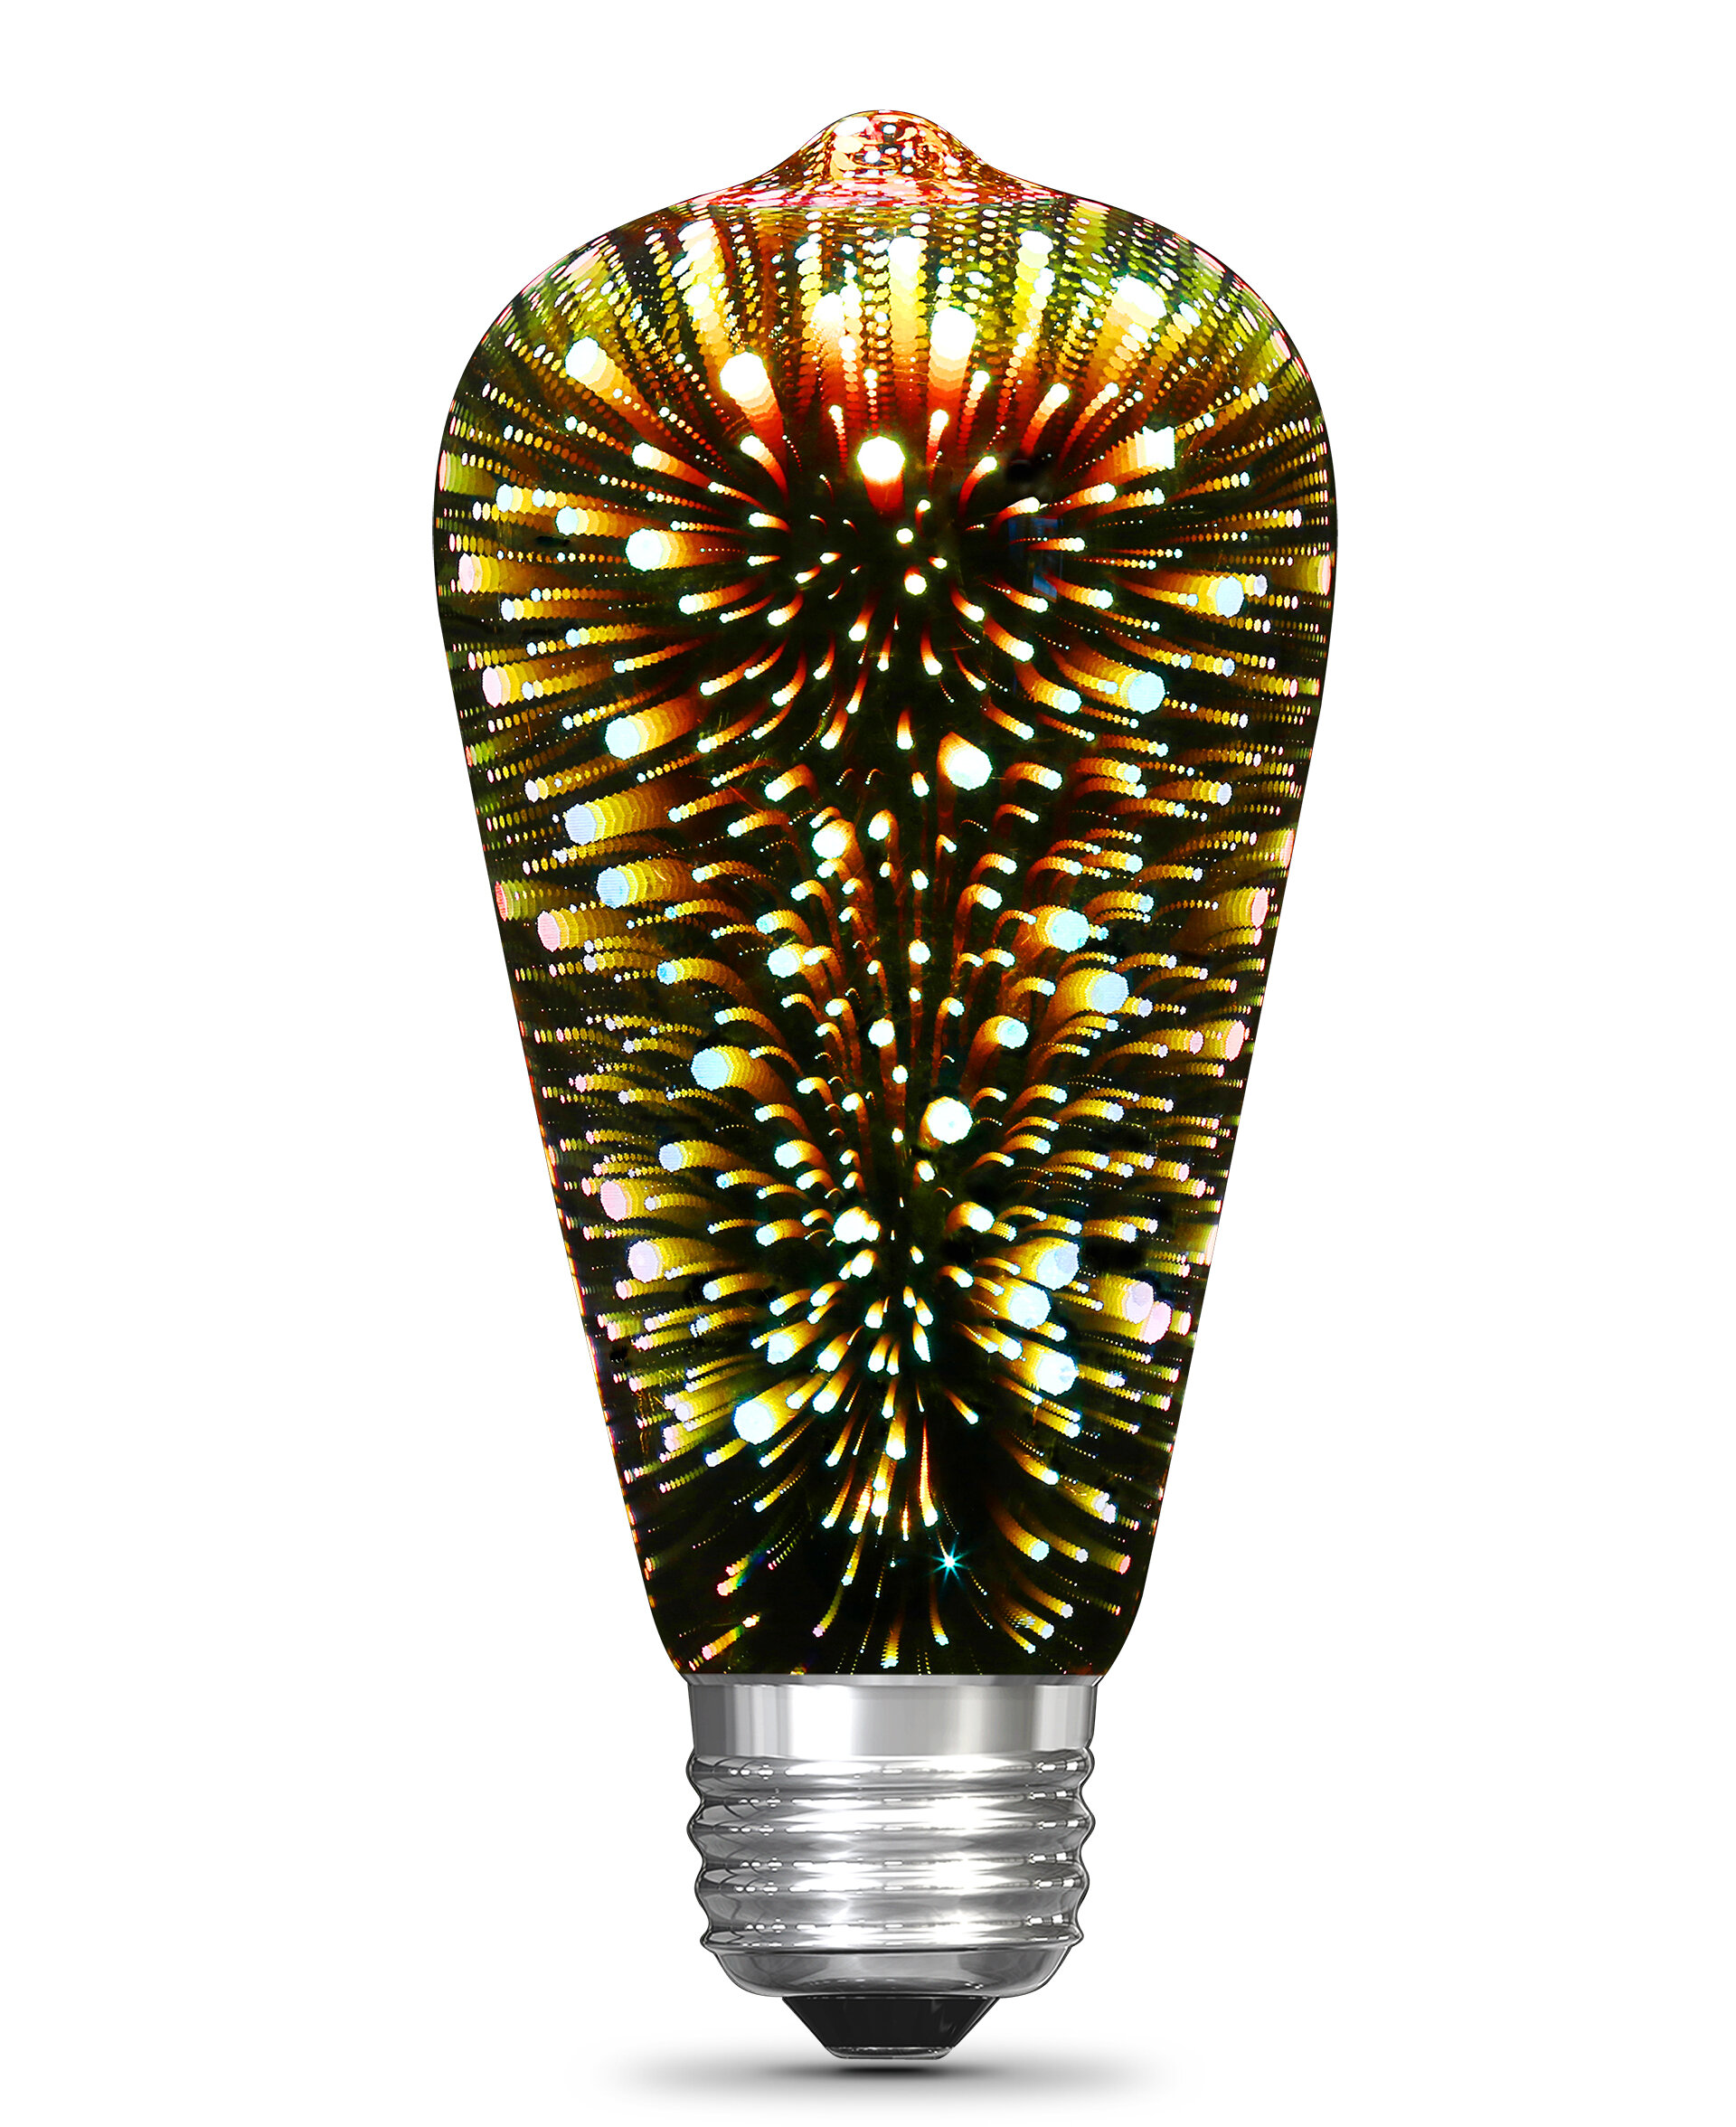 Ampoule incandescente de Feit Electric, intensité réglable, culot moyen  E-26, A19, 60 W, paquet de 4